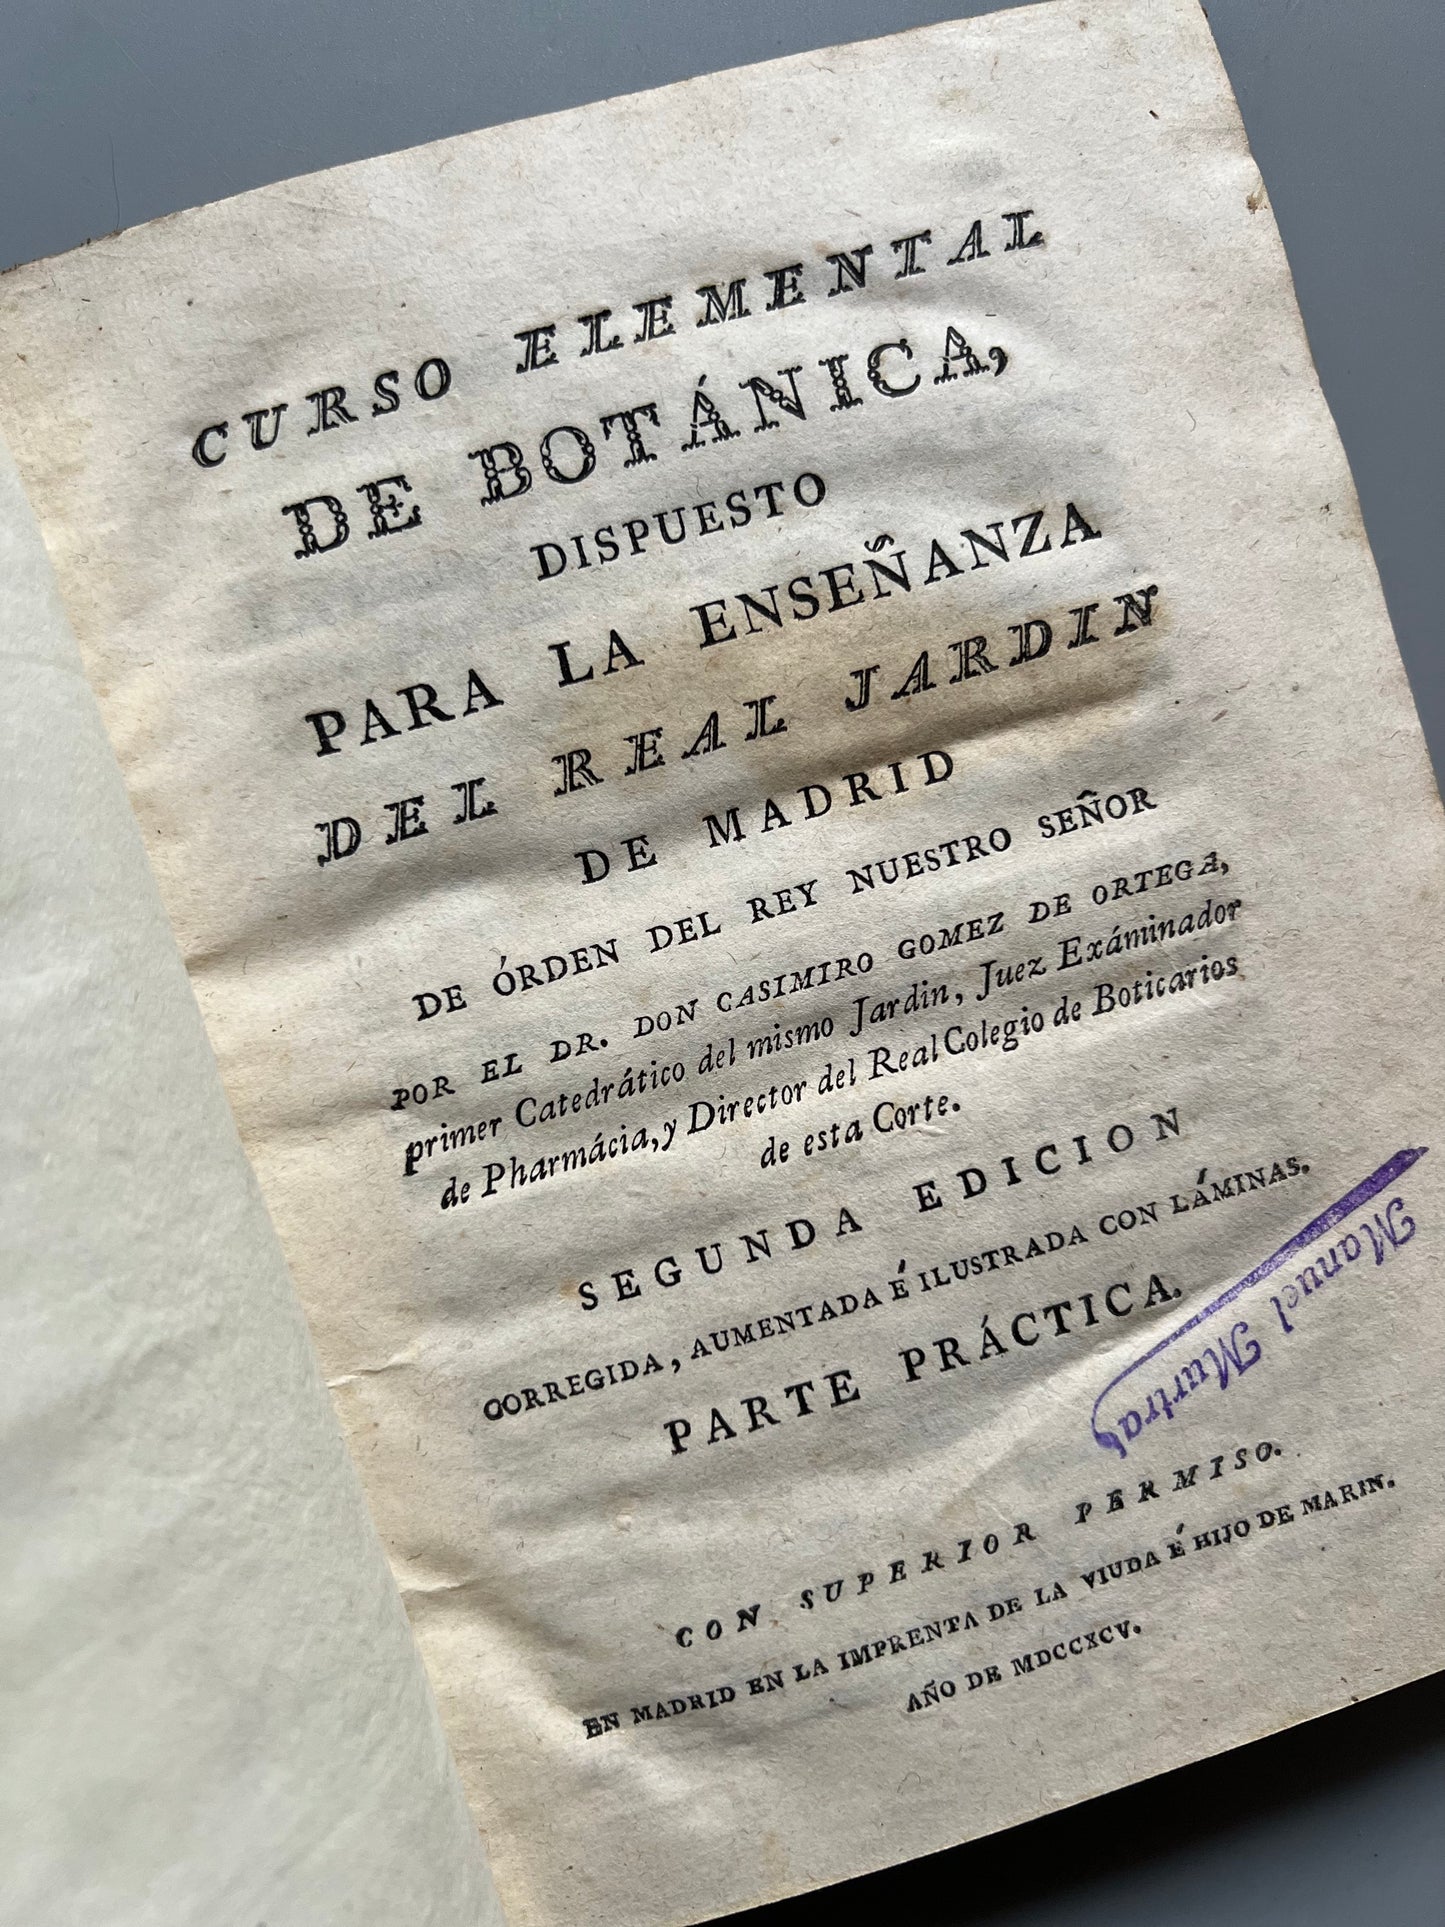 Curso elemental de botánica dispuesto para la enseñanza del Real Jardín de Madrid (parte práctica) - Imprenta de la viuda e hijo de Marin, 1795